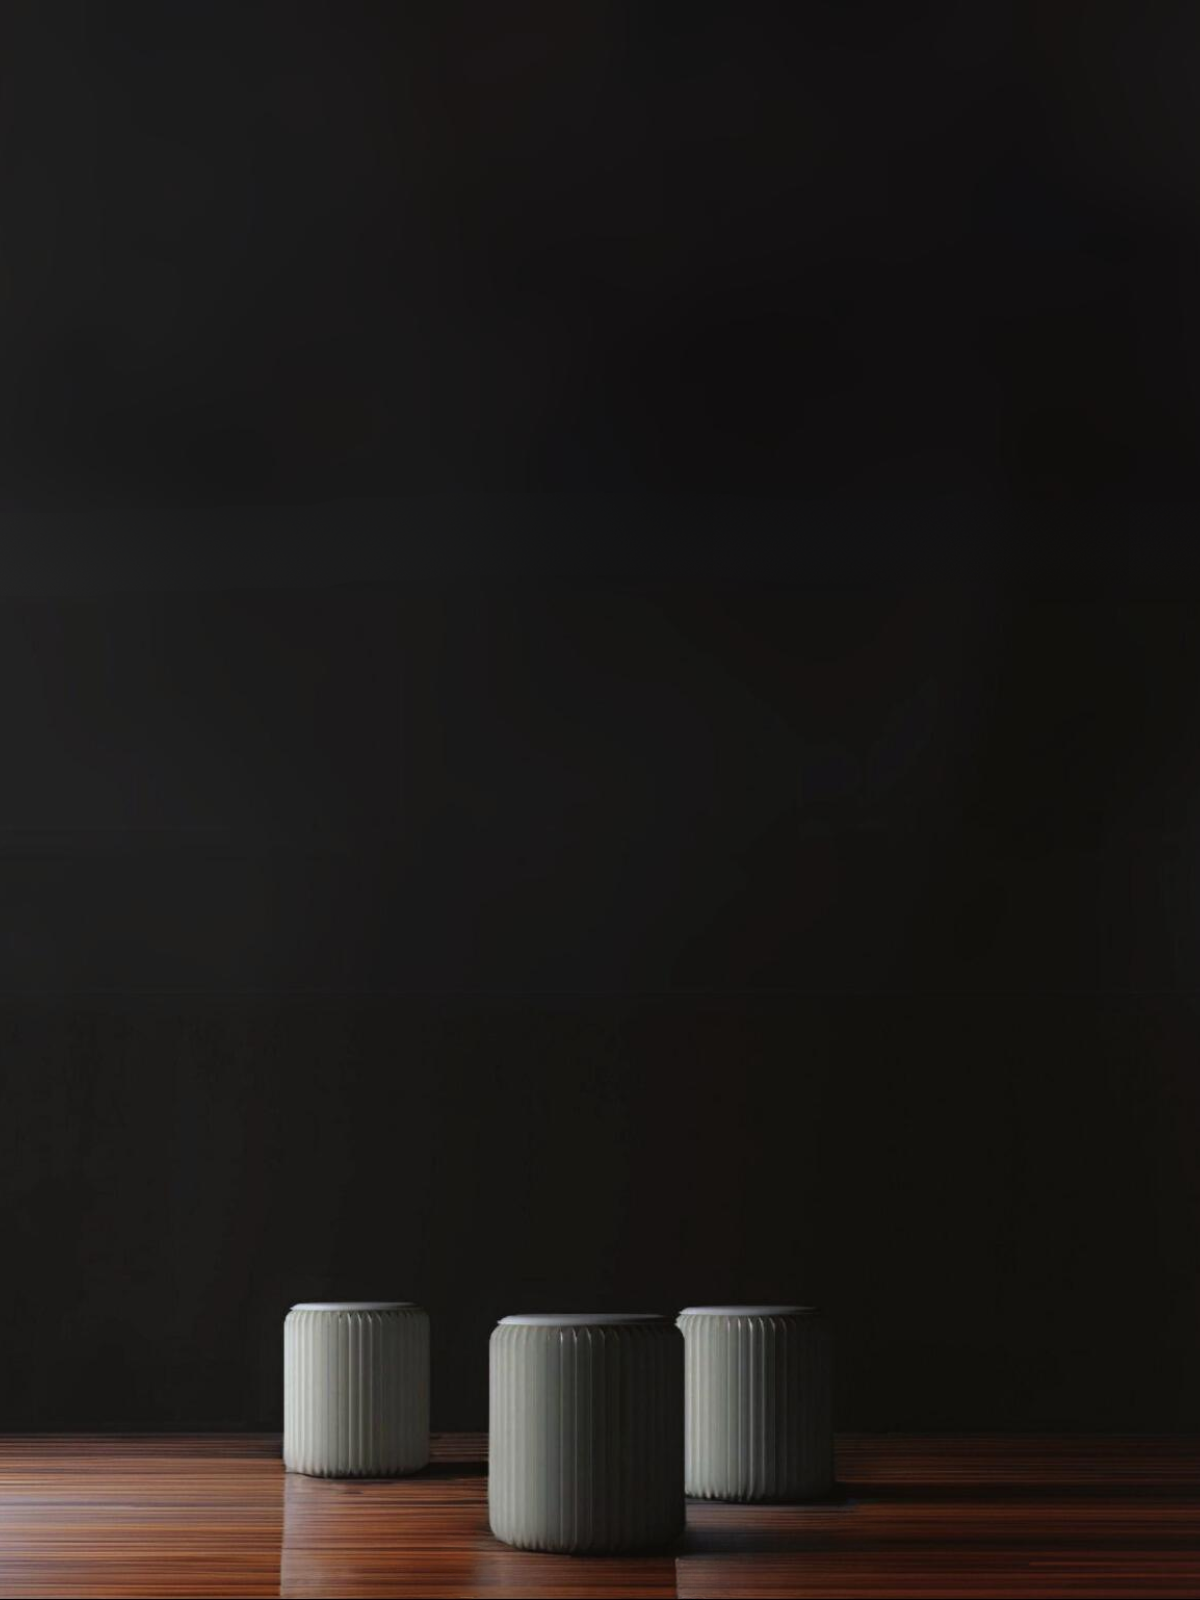 3 white foldable stools minimalistic elegan design on wooden floor